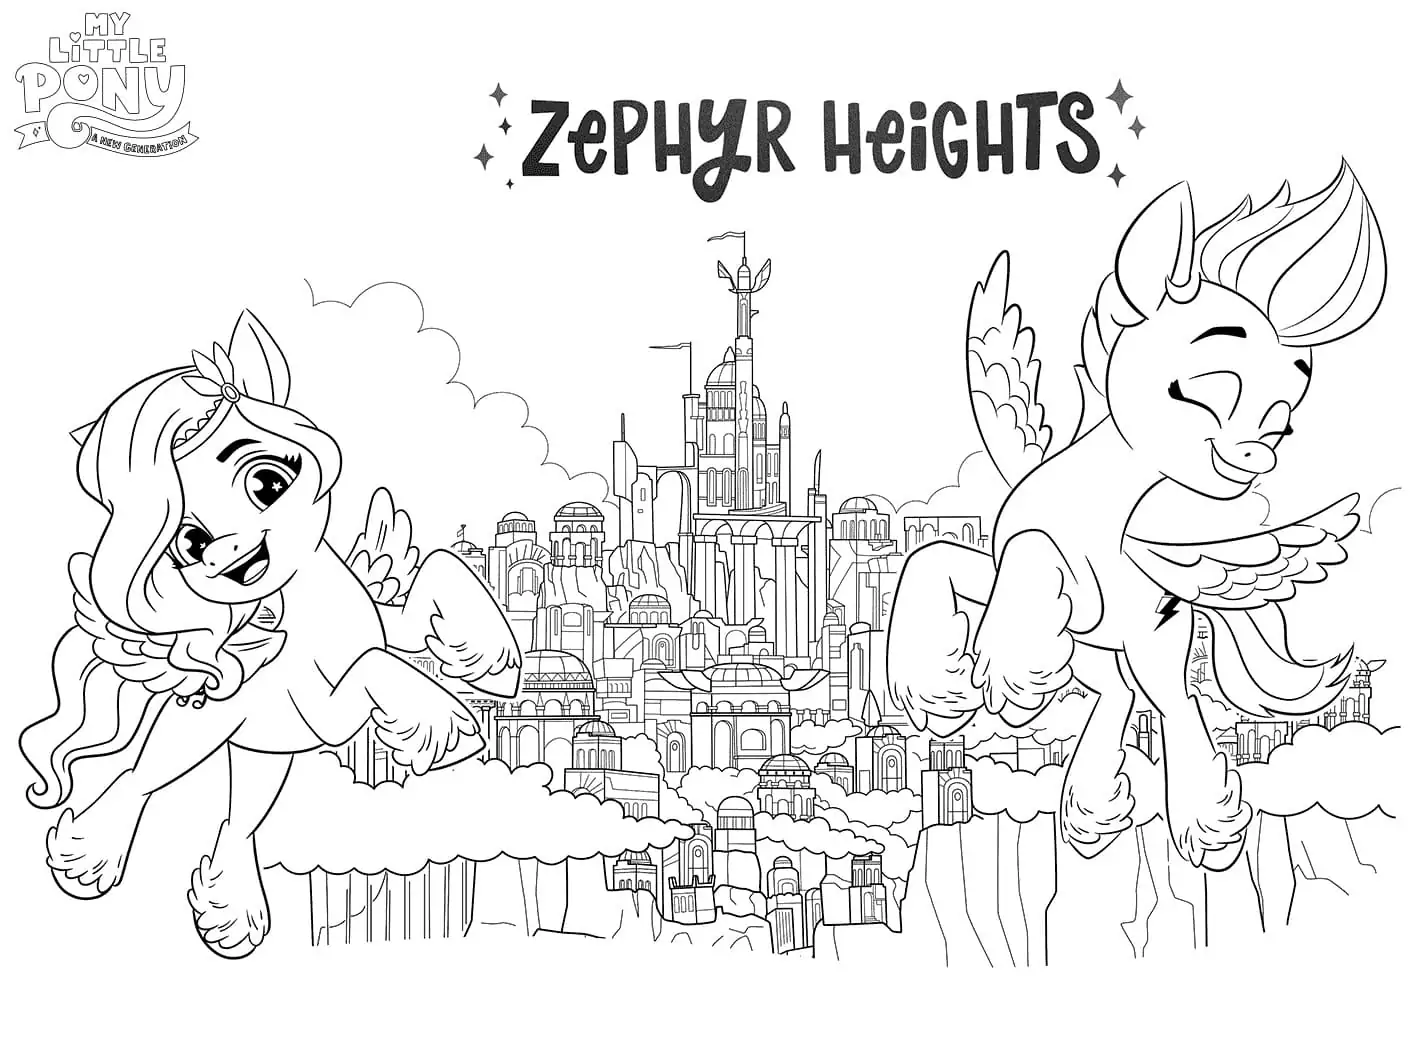 Zephyr Heights